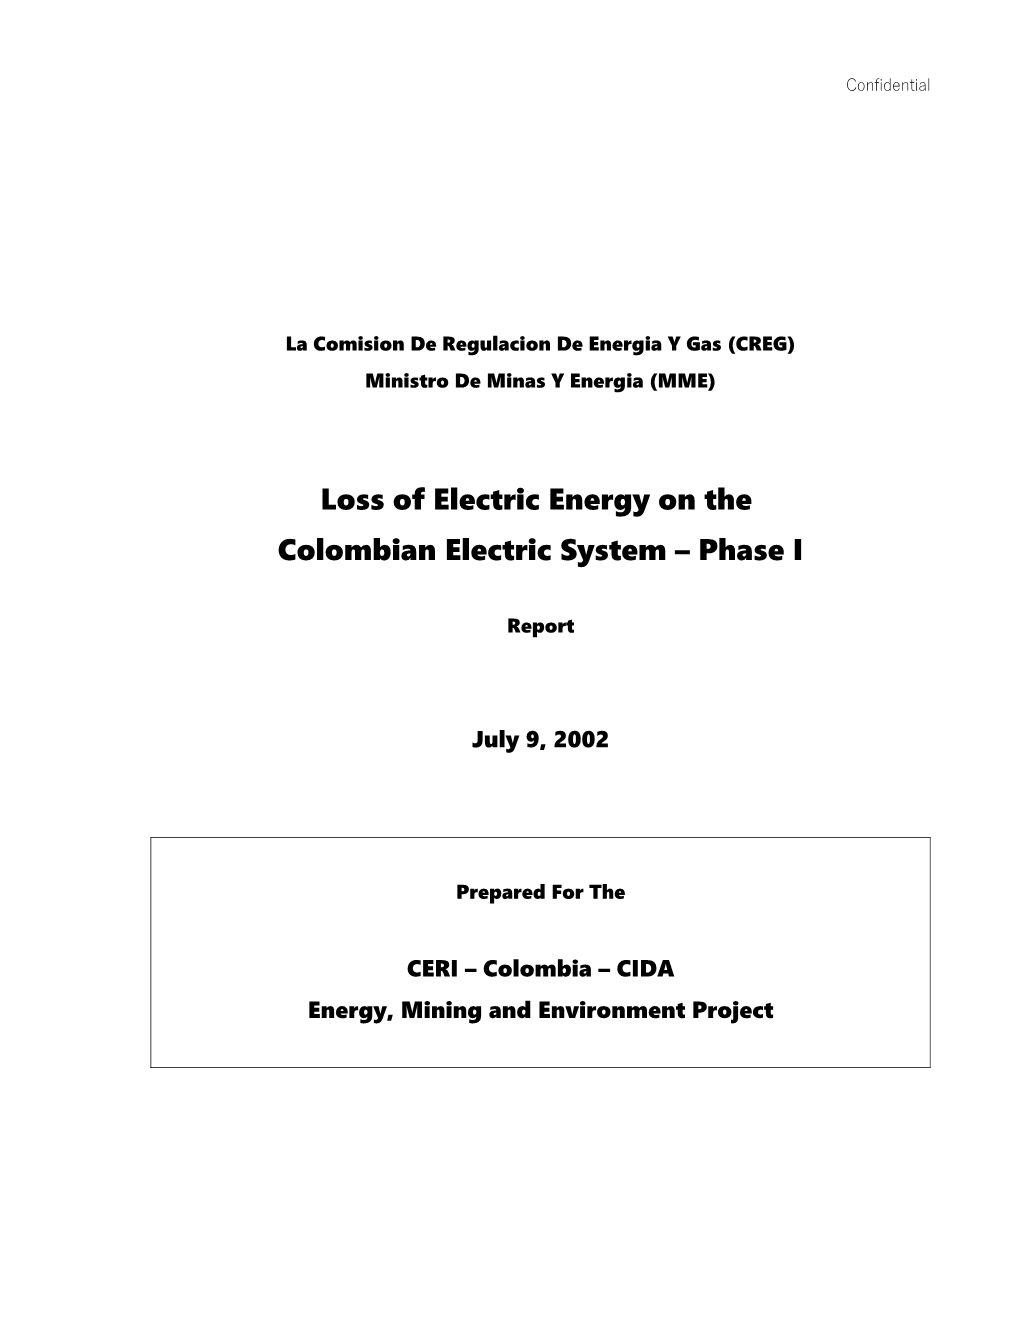 La Comision De Regulacion De Energia Y Gas (CREG)